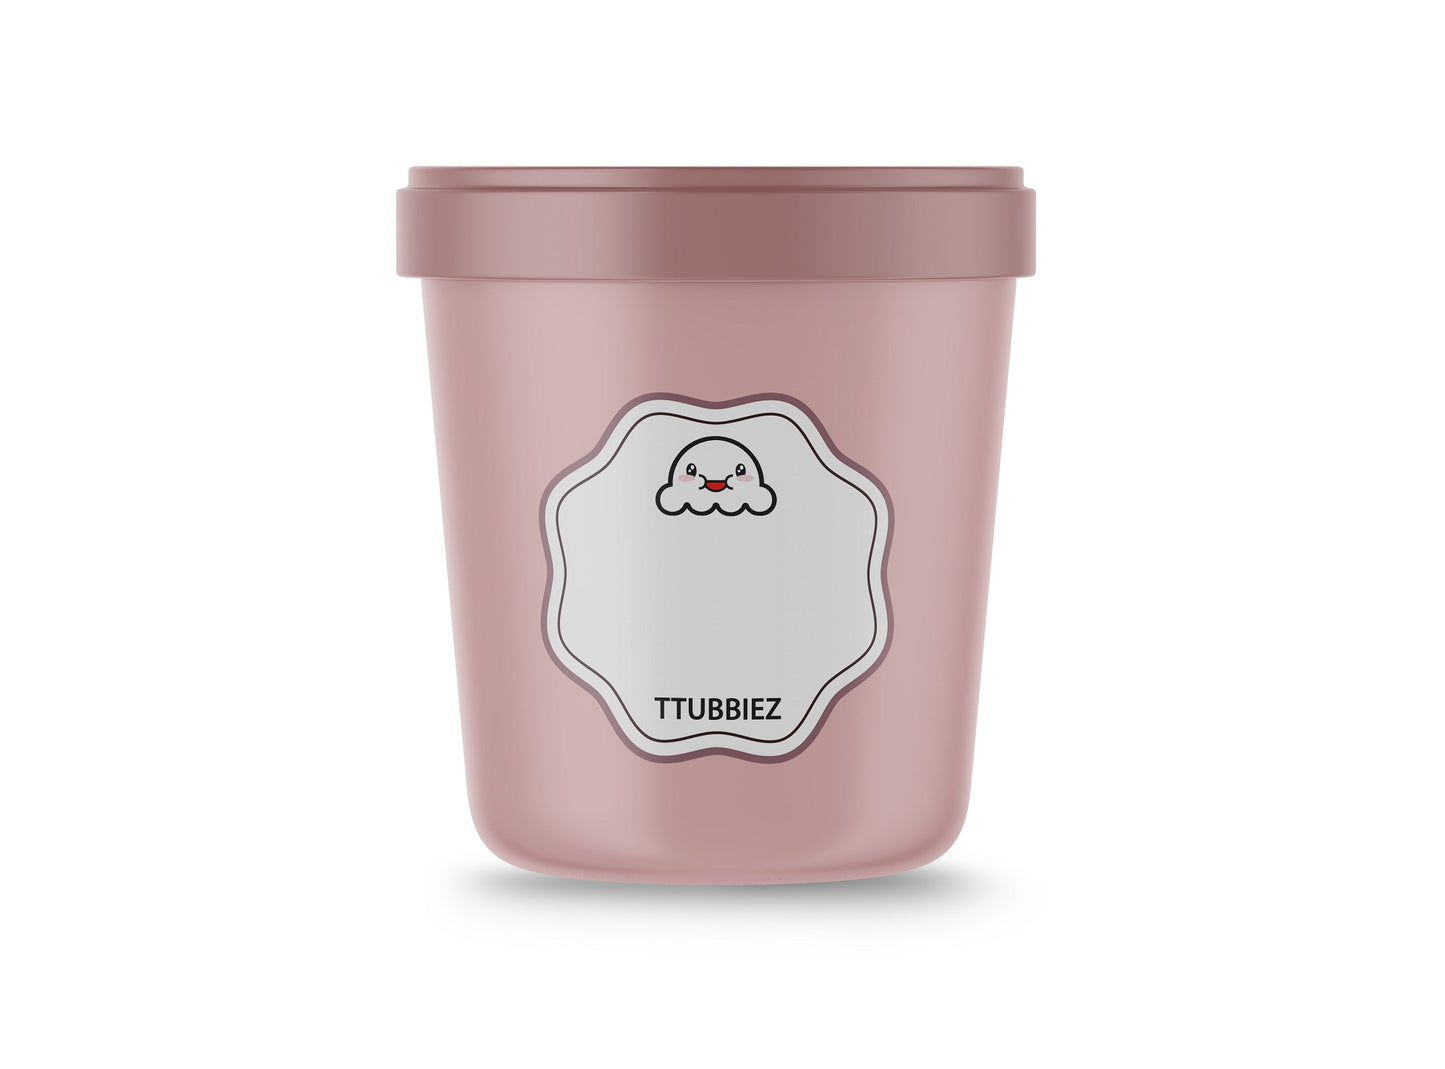  TTUBBIEZ Ice Cream Containers (2 Pack - 1 Quart Each